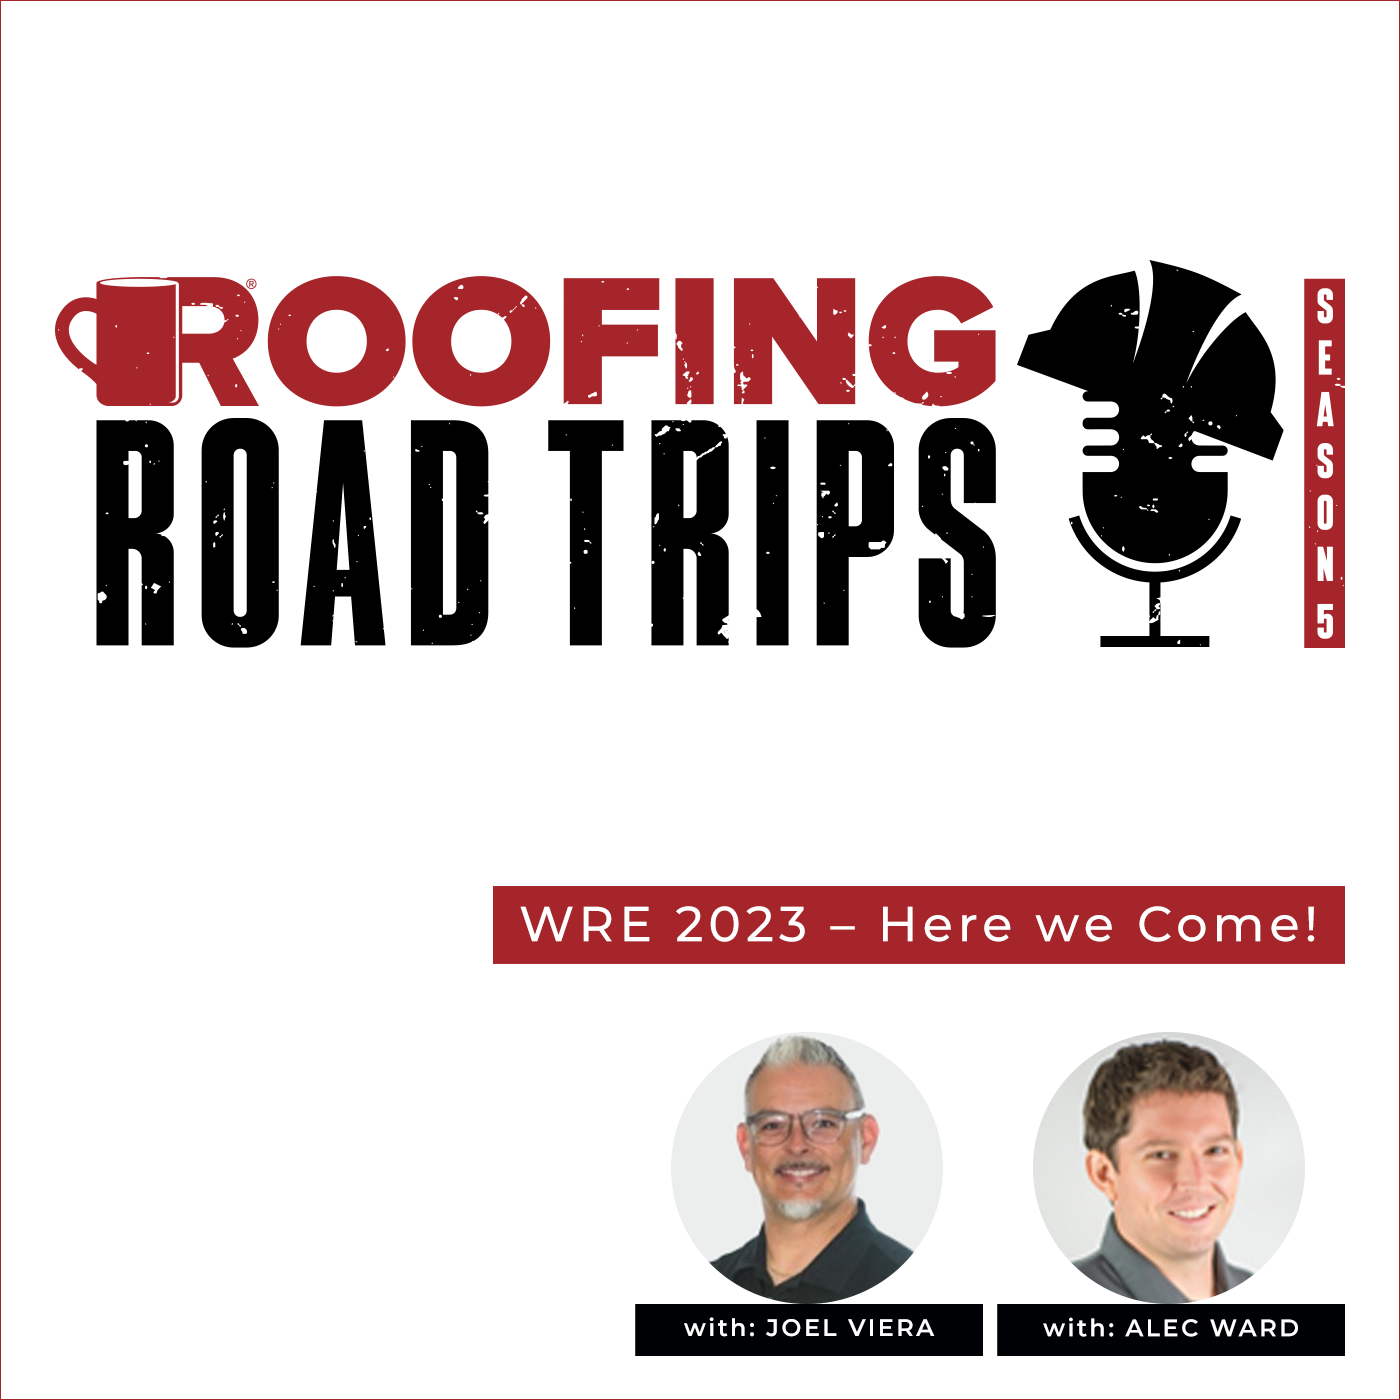 Joel Viera & Alec Ward - WRE 2023 - Here we Come!